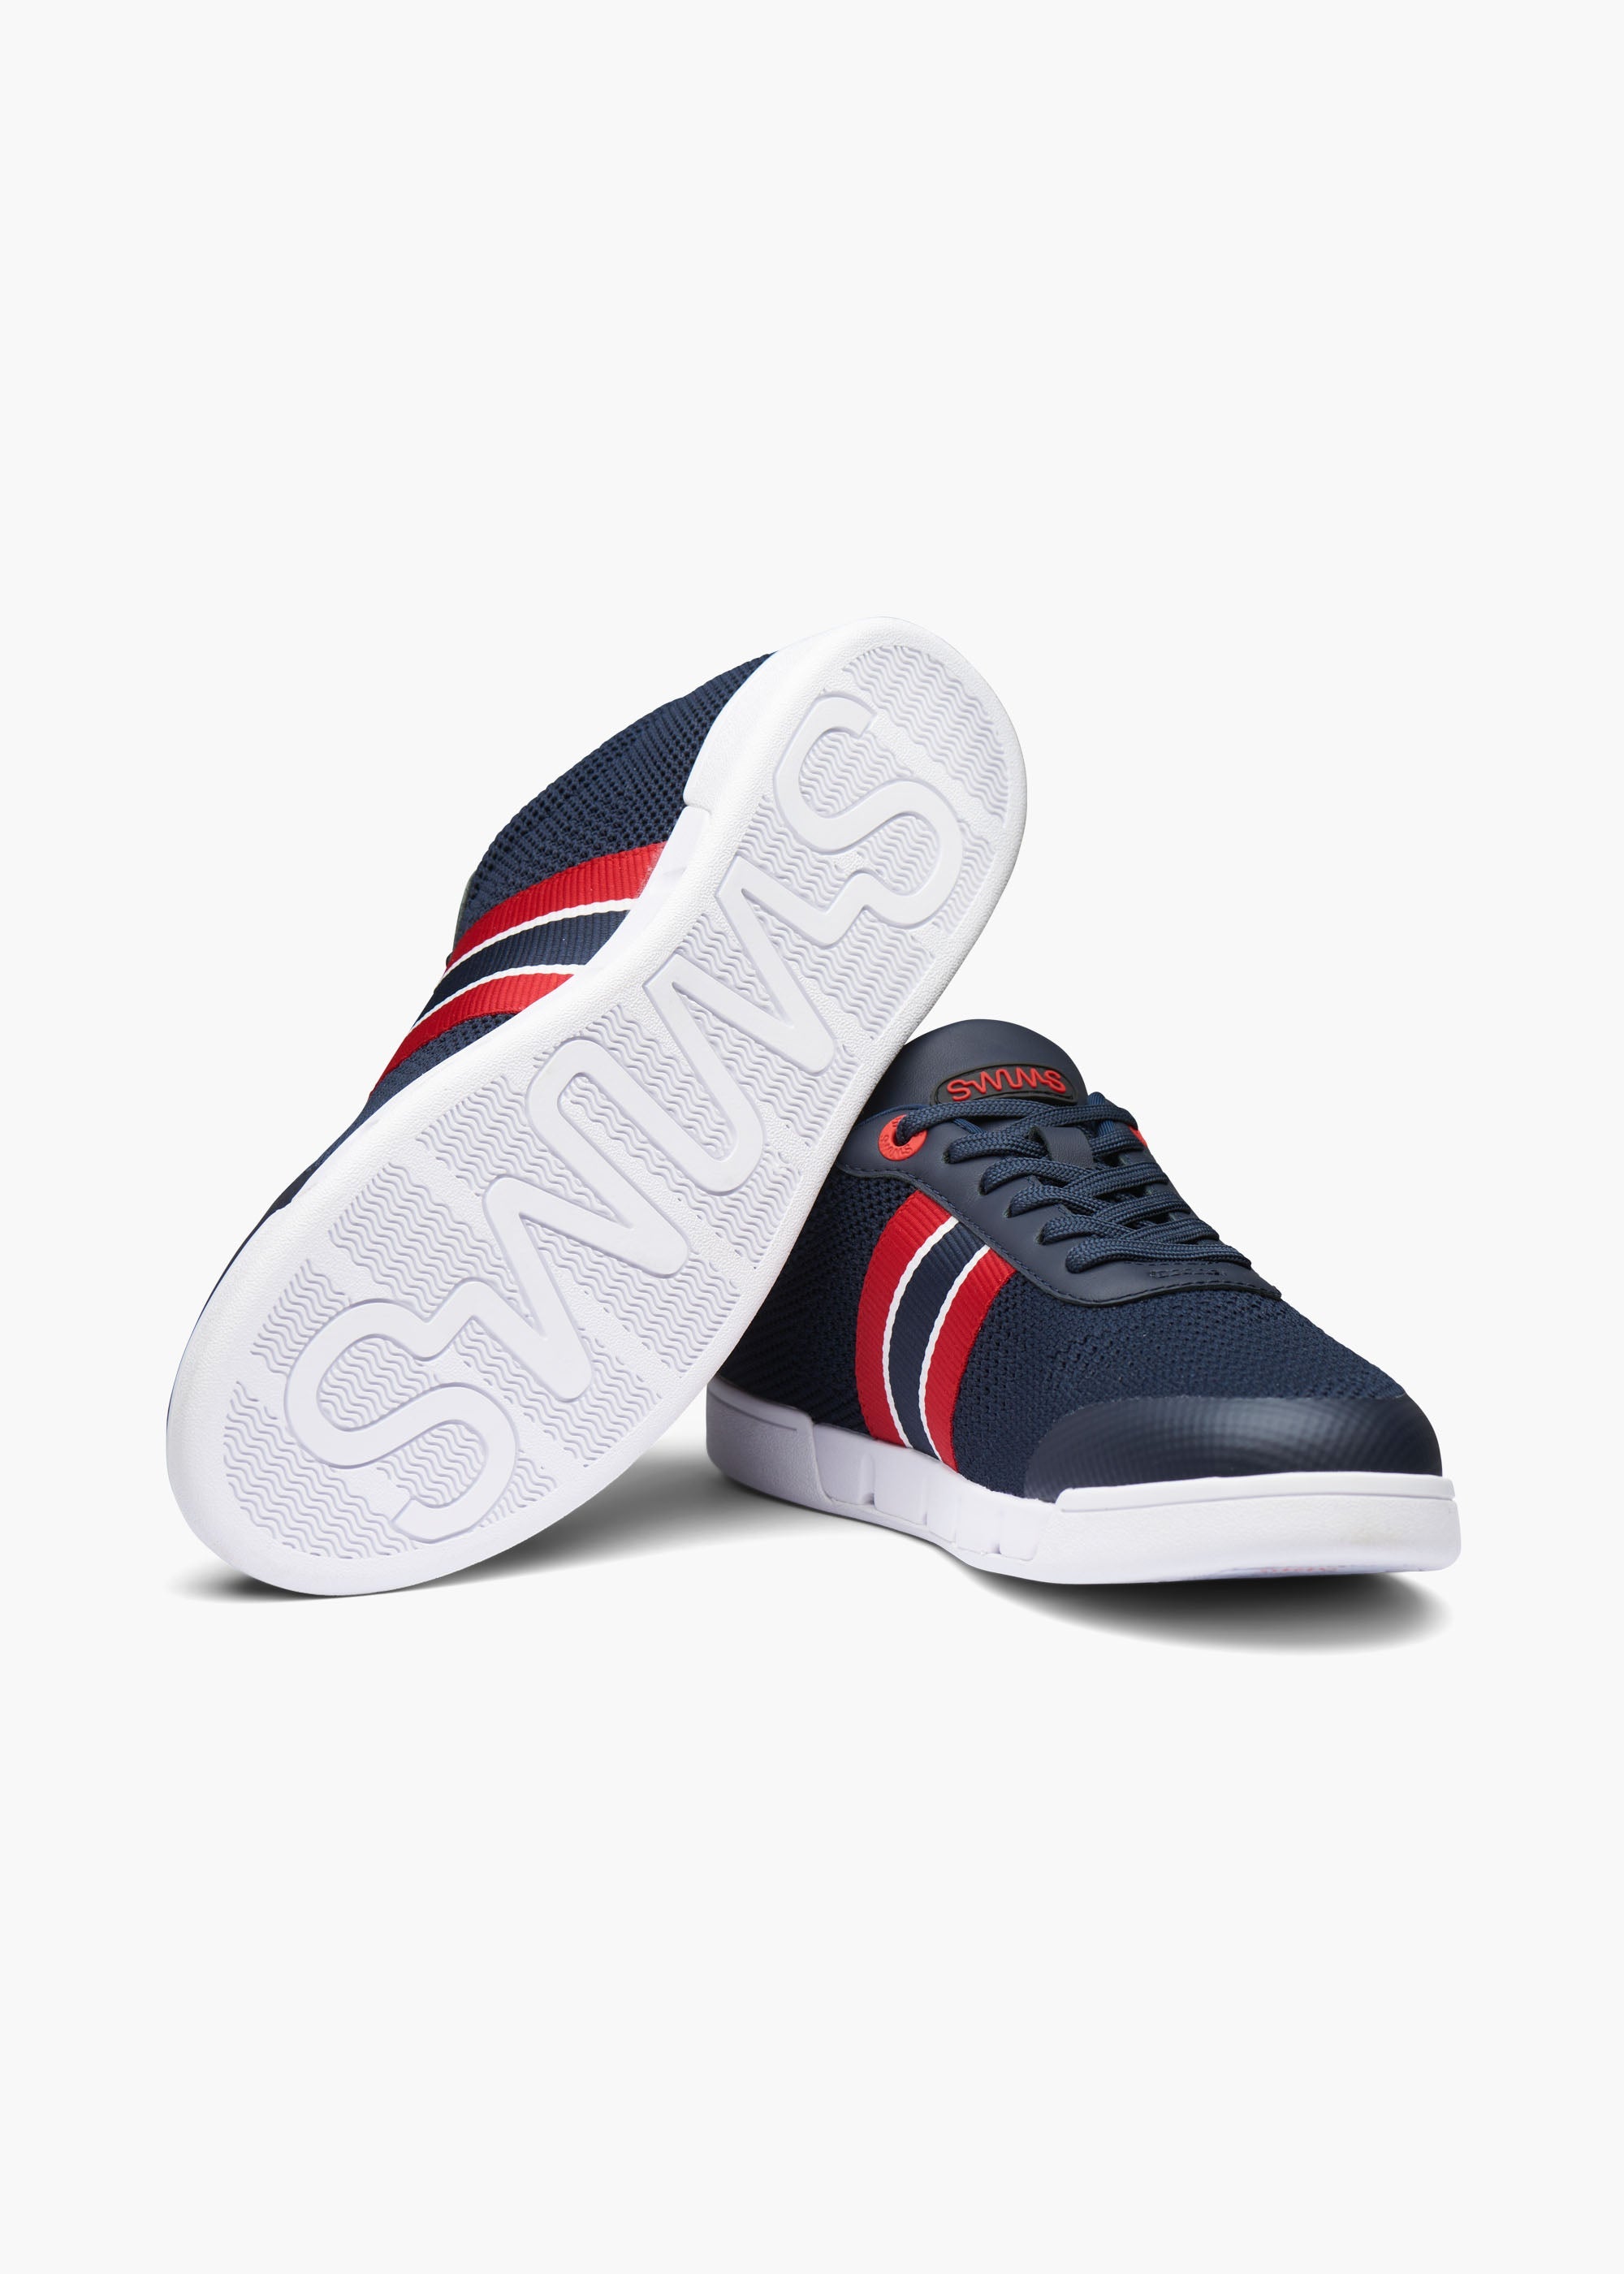 Solaro Sneaker - background::white,variant::Navy